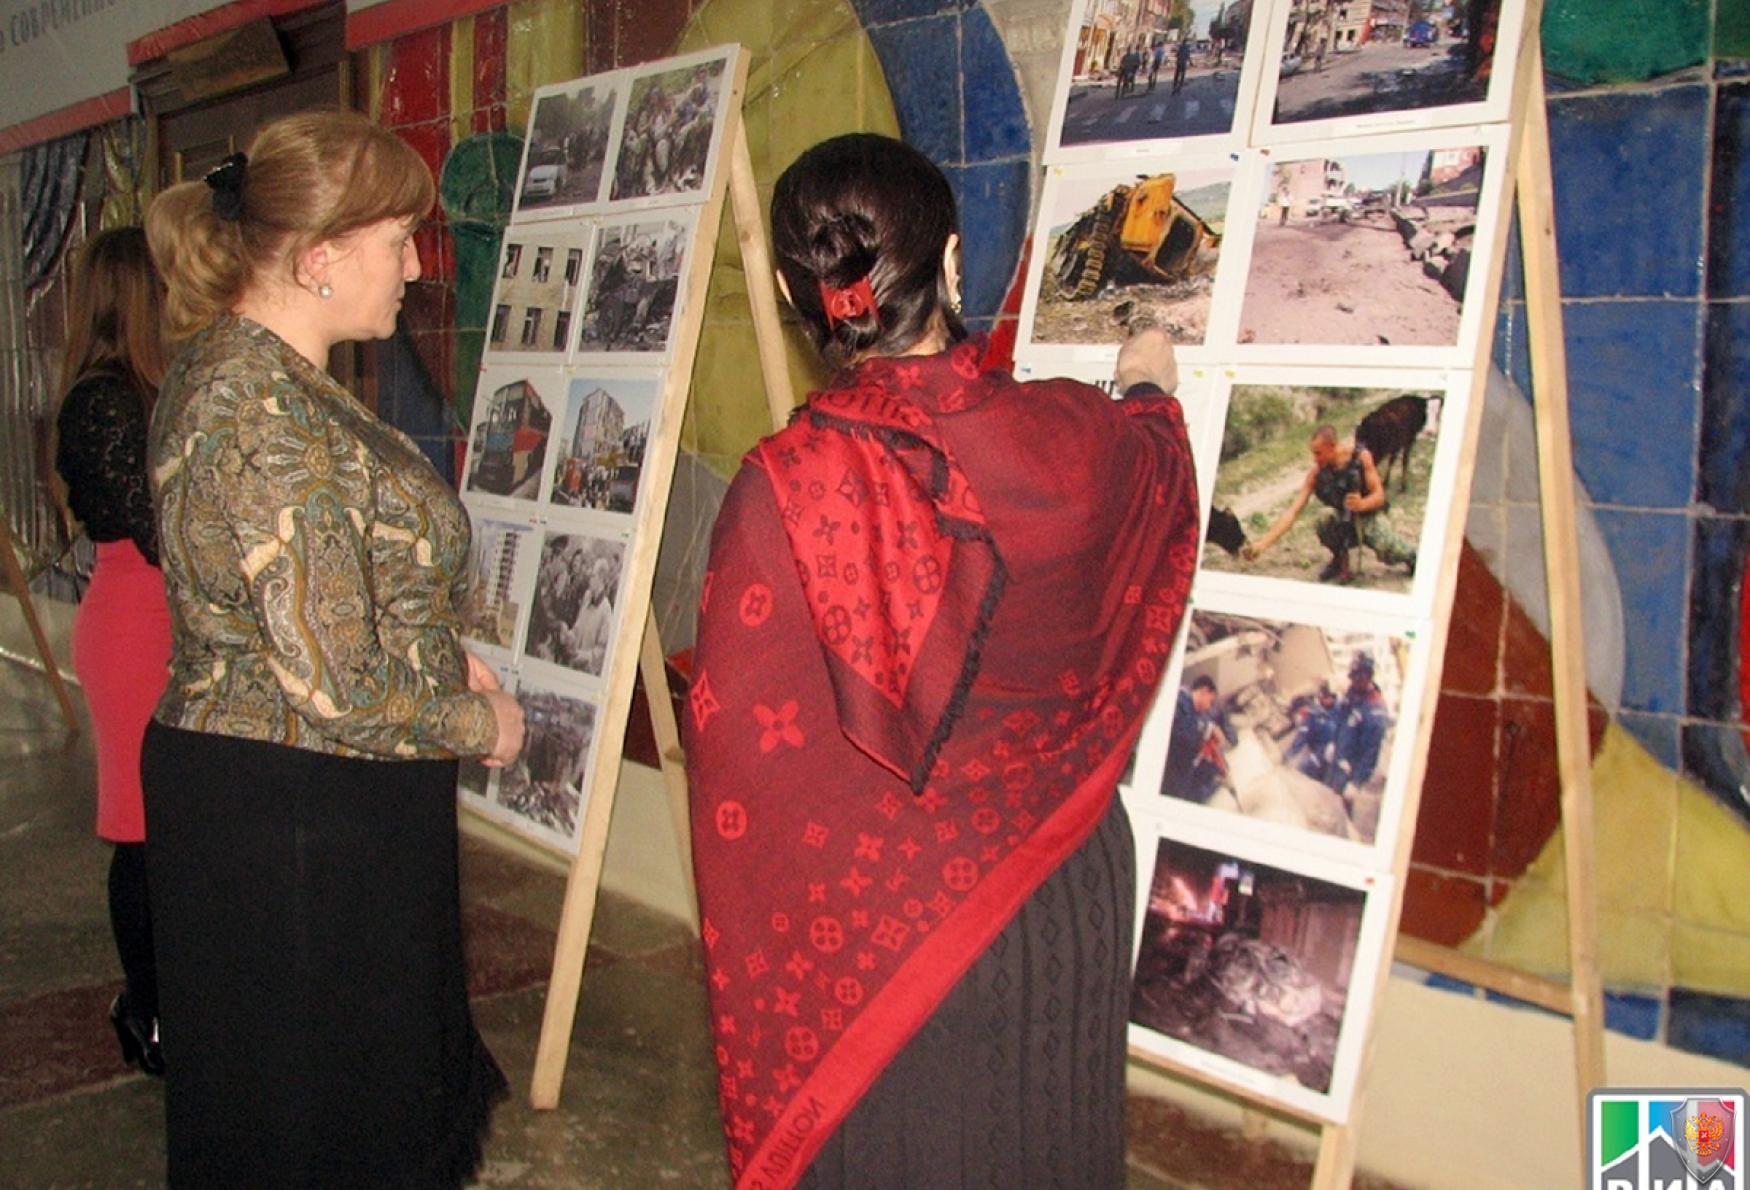 Фотовыставка «Трагедии терроризма» в Центрах культуры муниципалитетов Дагестана